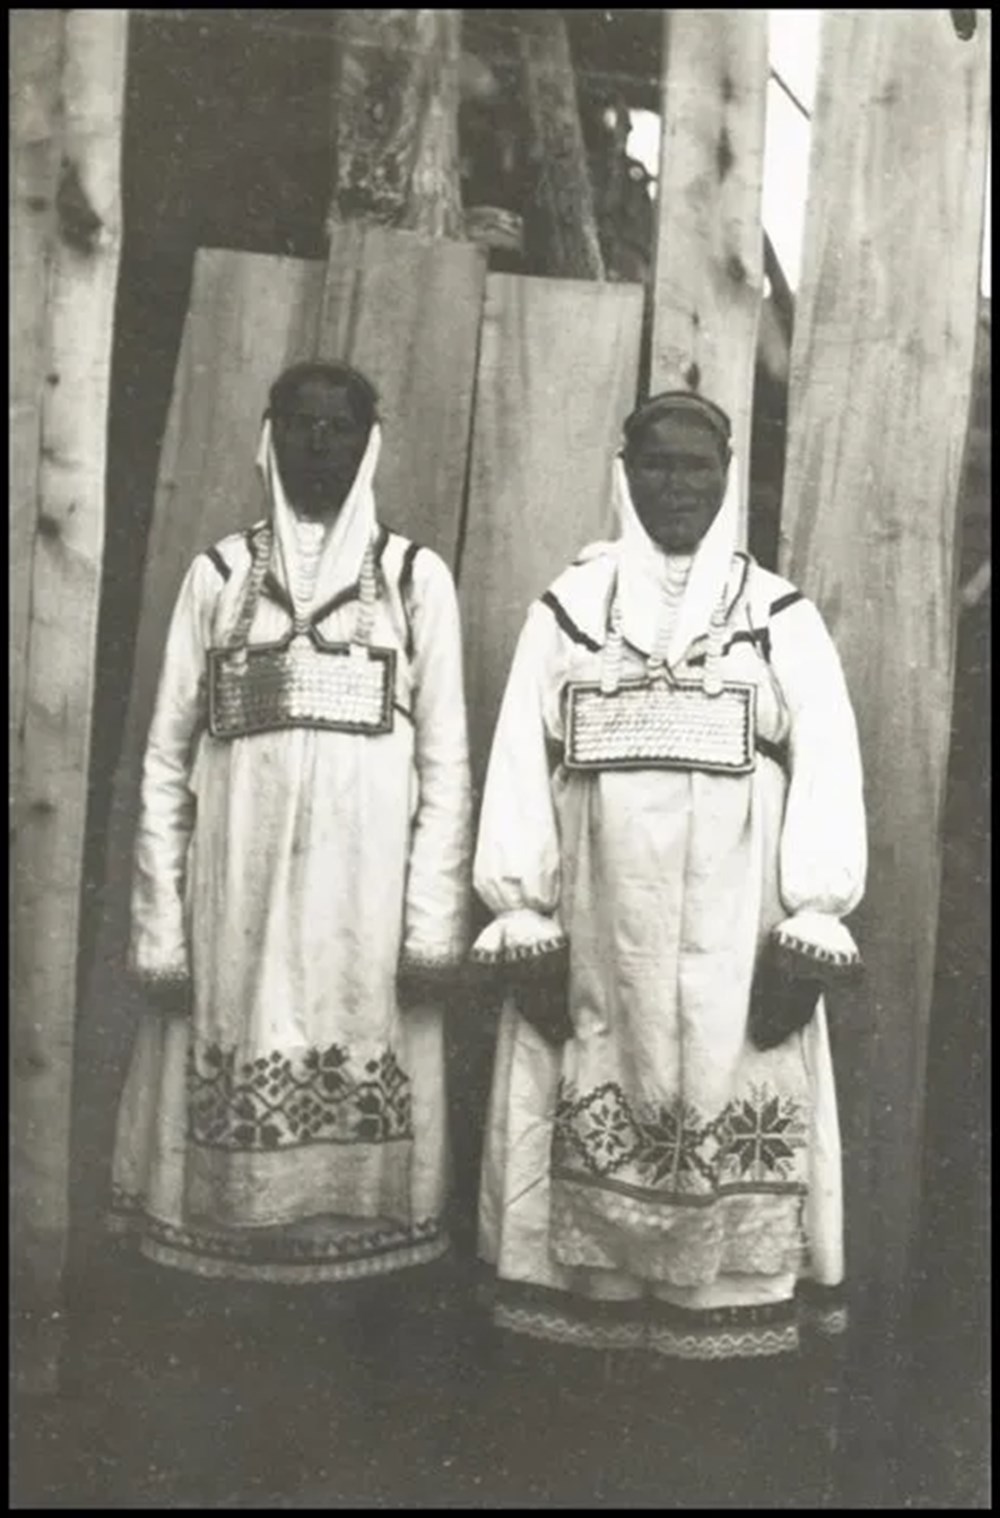 Bilim kurgu değil Türk boylarının 111 yıllık fotoğrafları. Gizemli heykeller, gelişmiş aletler, tanıdık kıyafetler (106 fotoğrafla gizemli Türk tarihi) - 6